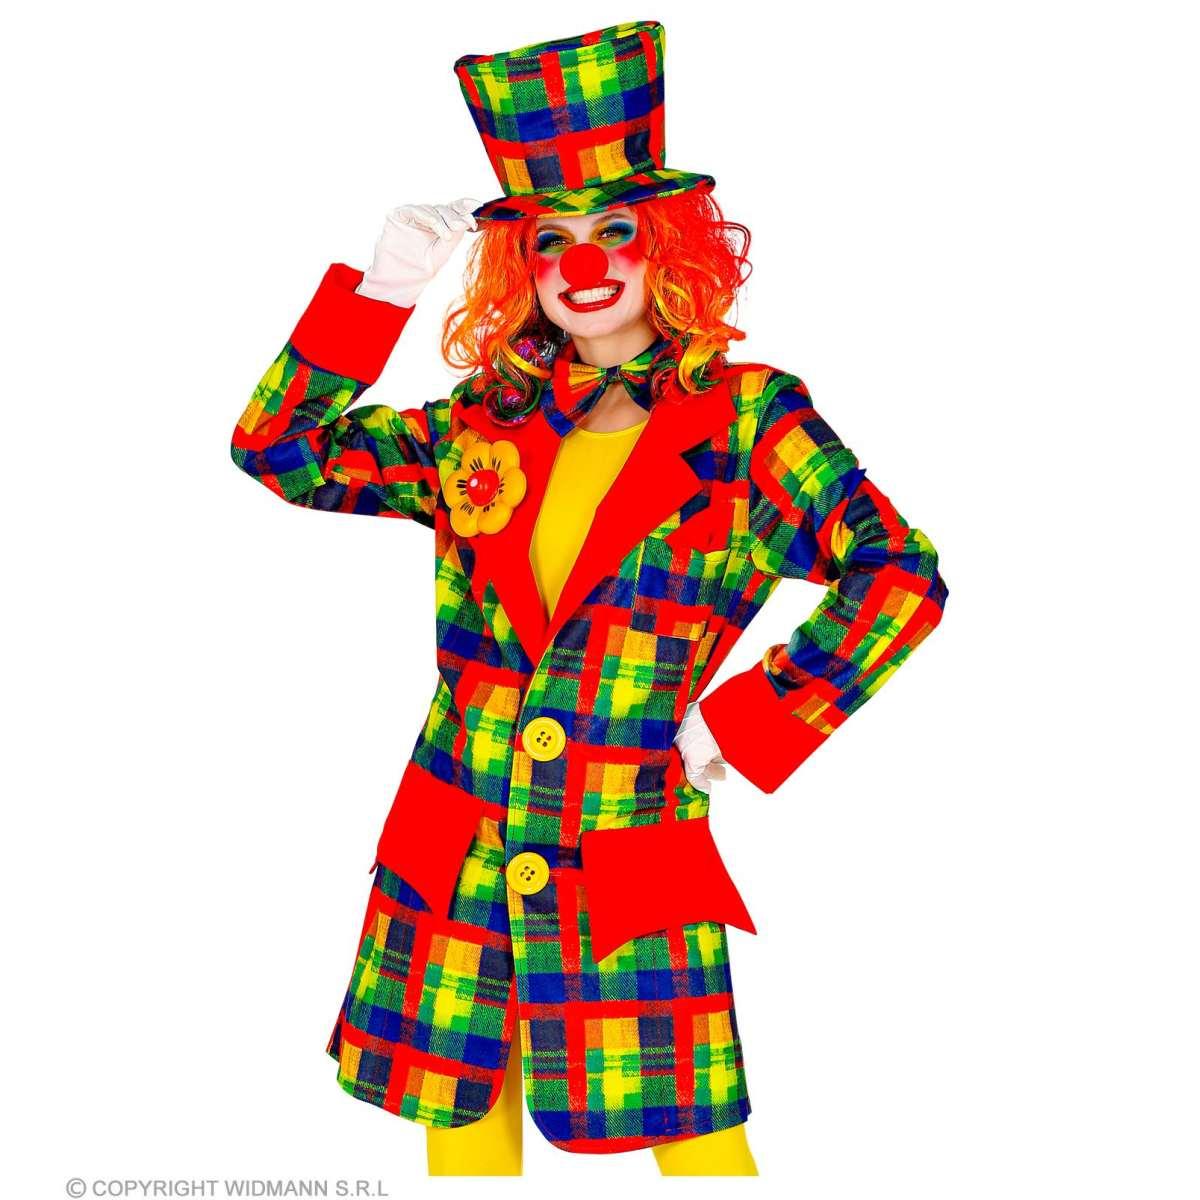 Costume Clown Giacca Multicolor